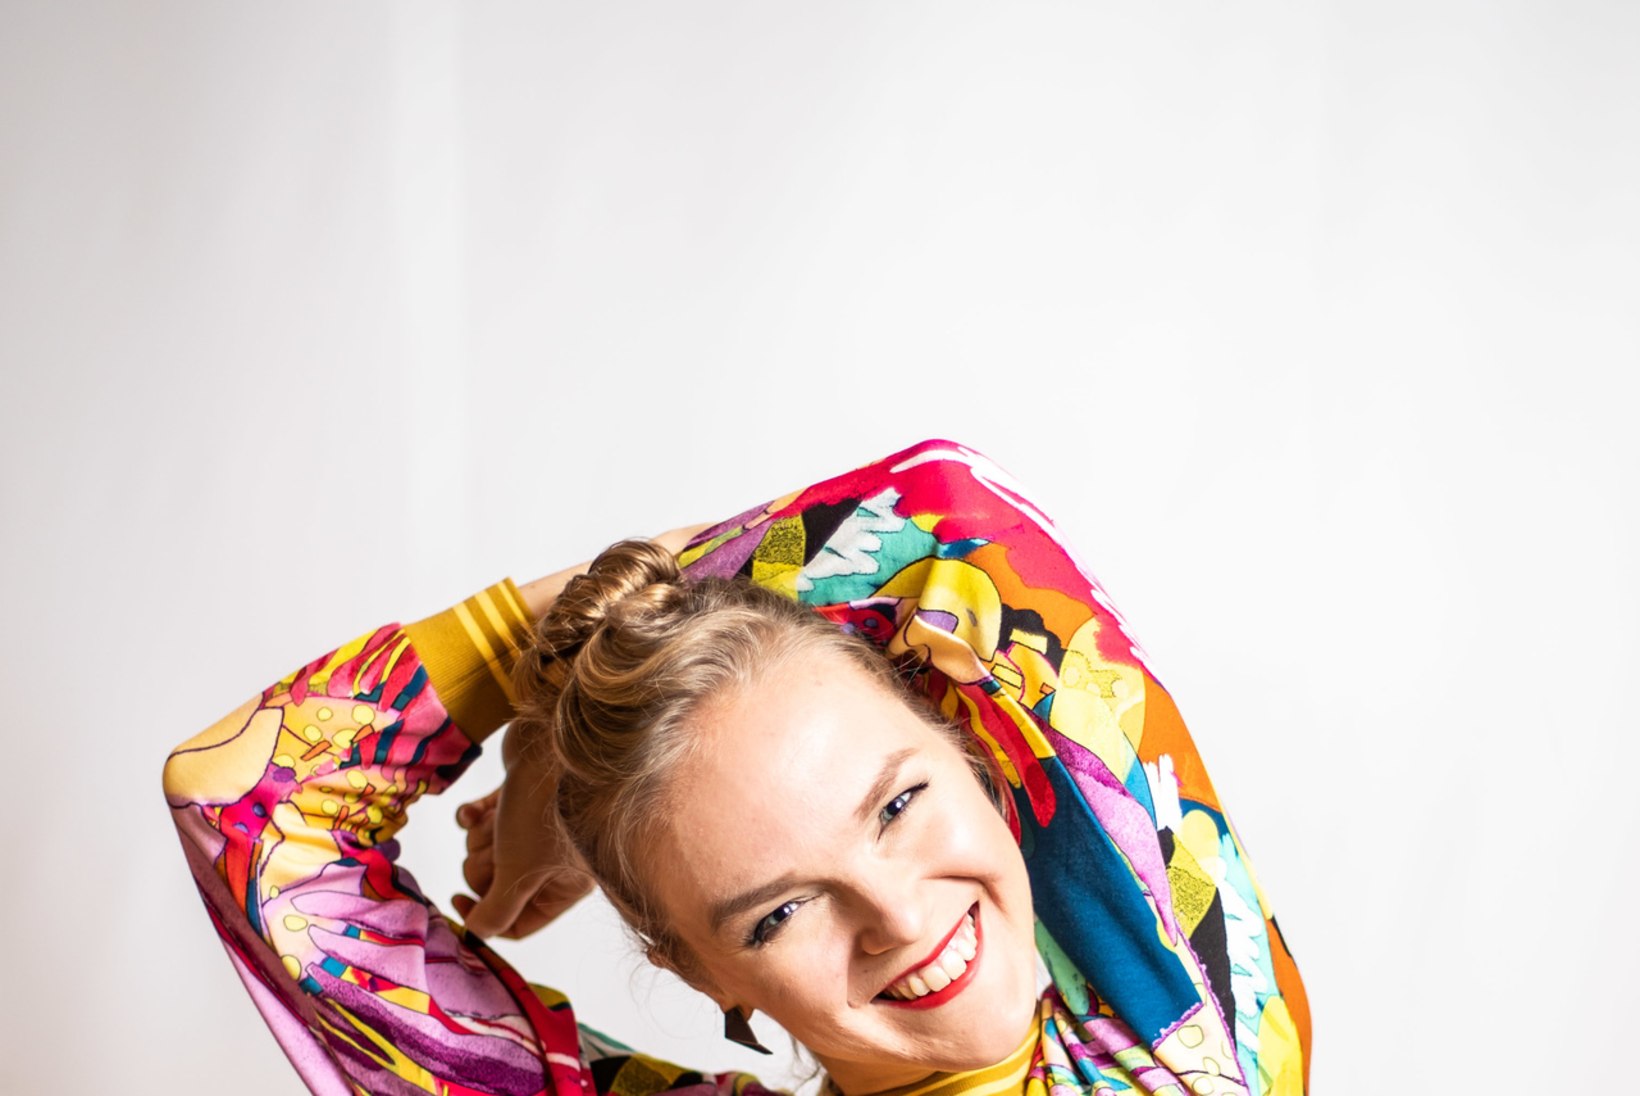 Kadri Voorand: ma ei taha, et Eestis teataks mind kui hullumeelset lauljat, kes teeb õudseid hääli